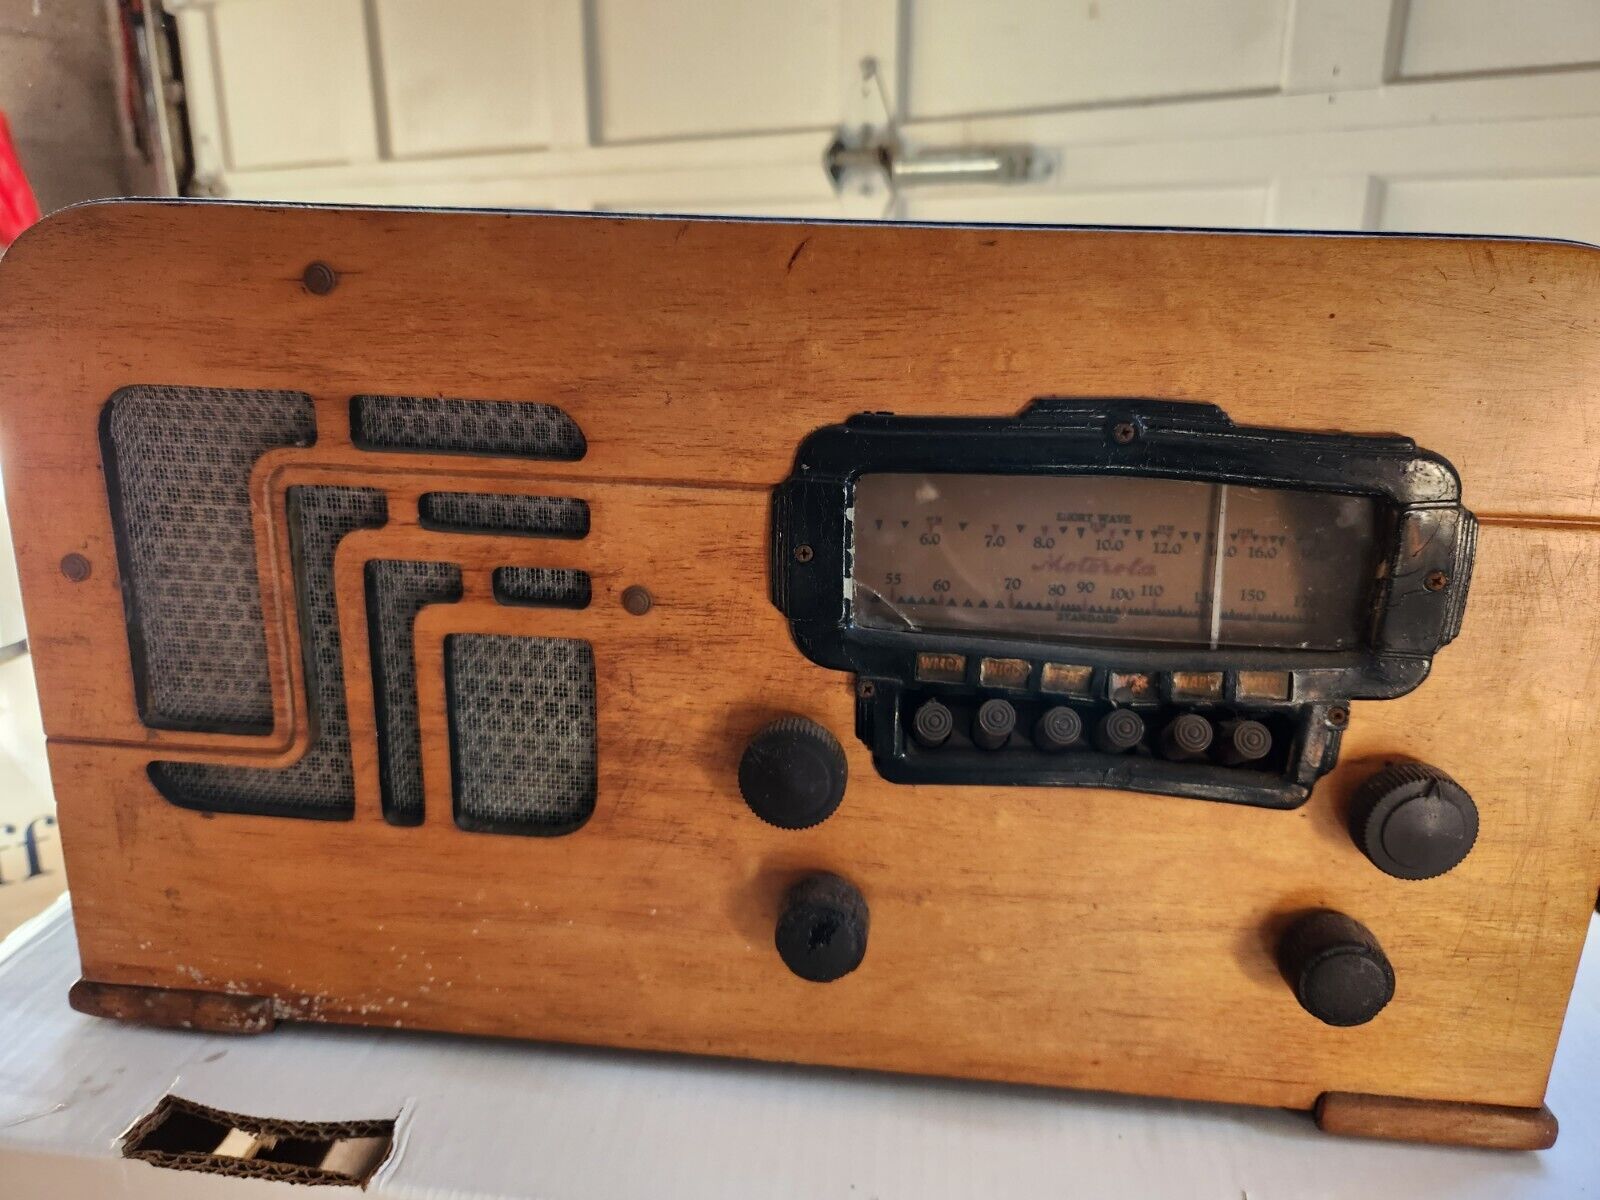 Old Antique Radio